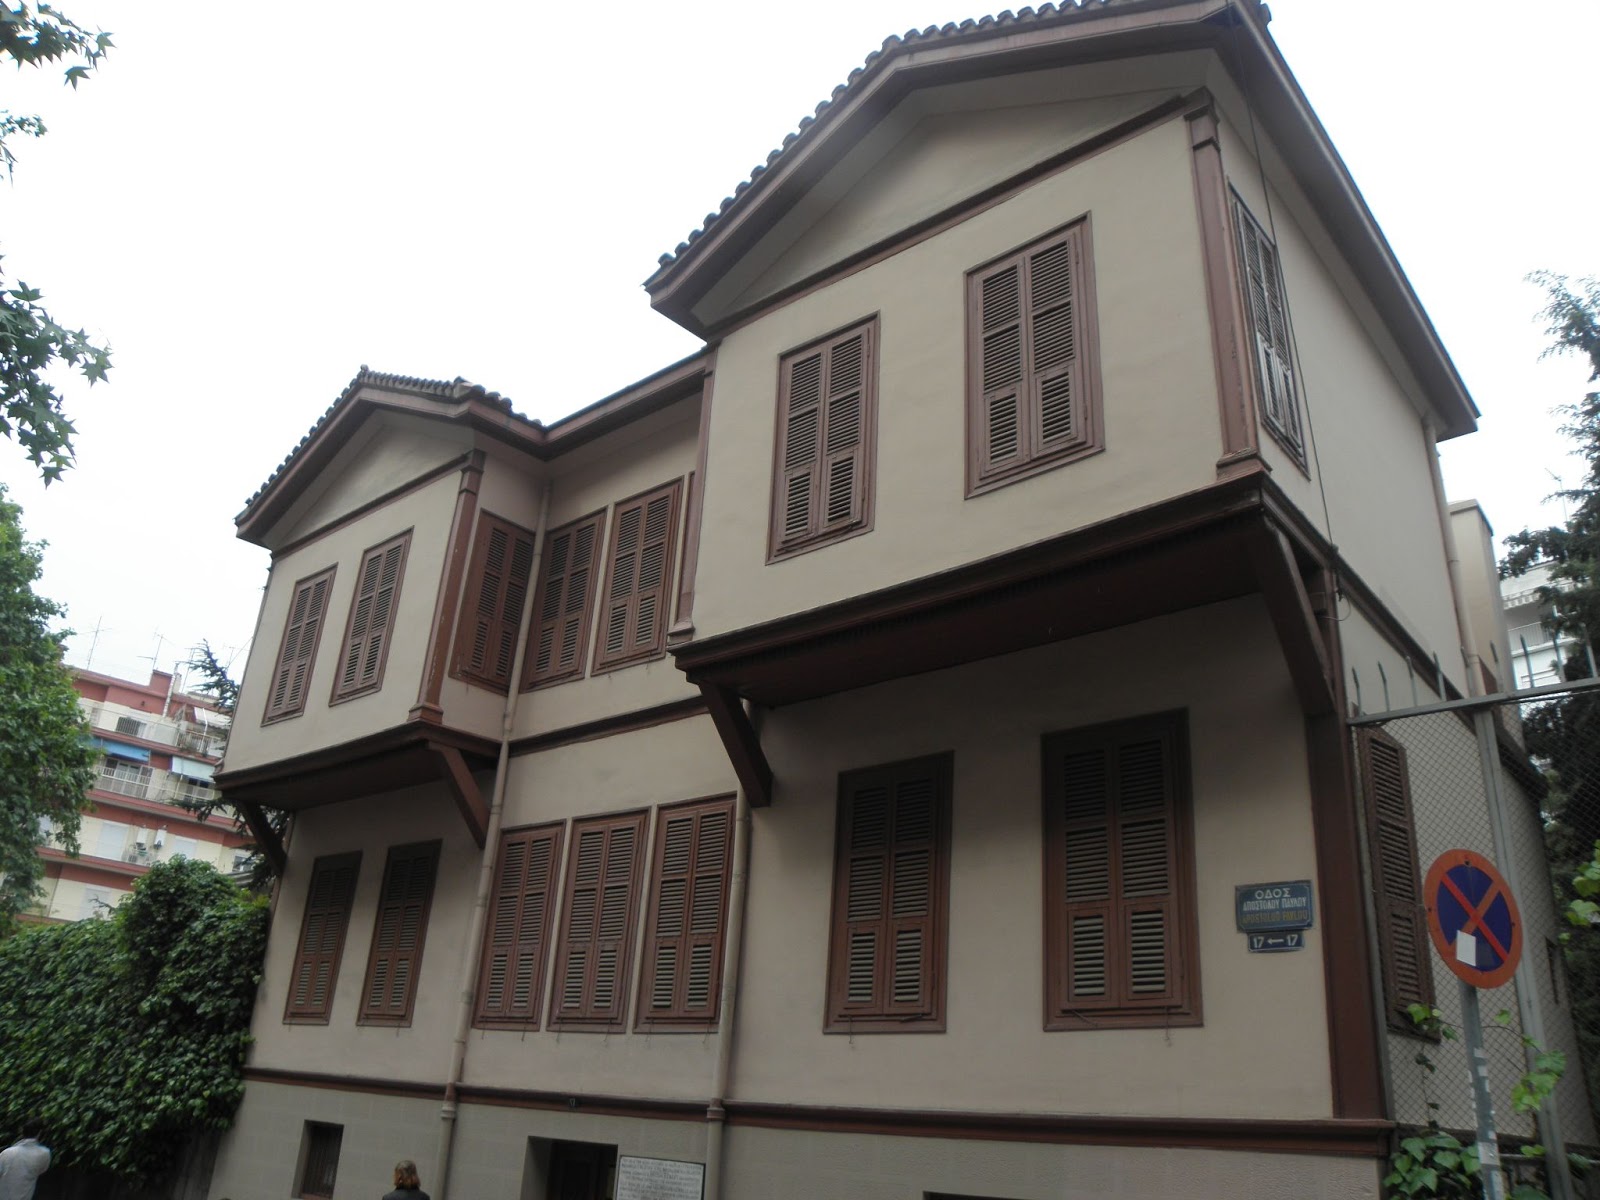 Atatürk'ün Evi